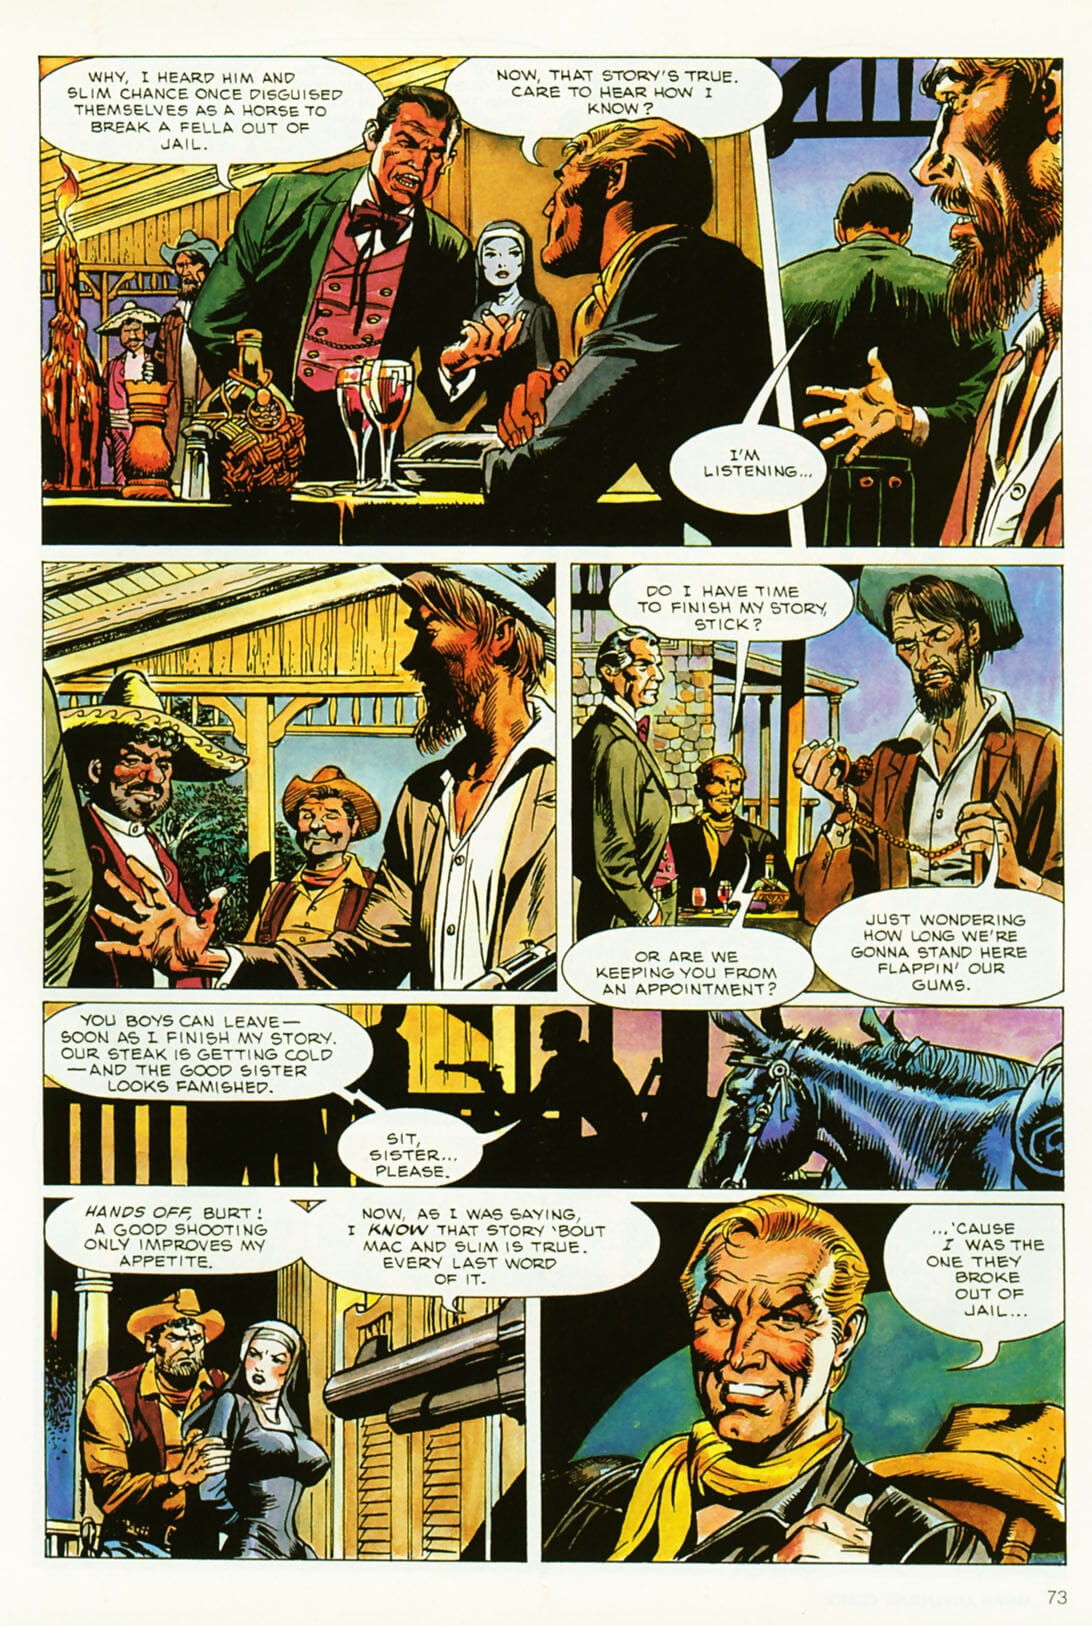 Penthouse Mens Adventure Comix #5 - part 2 page 1